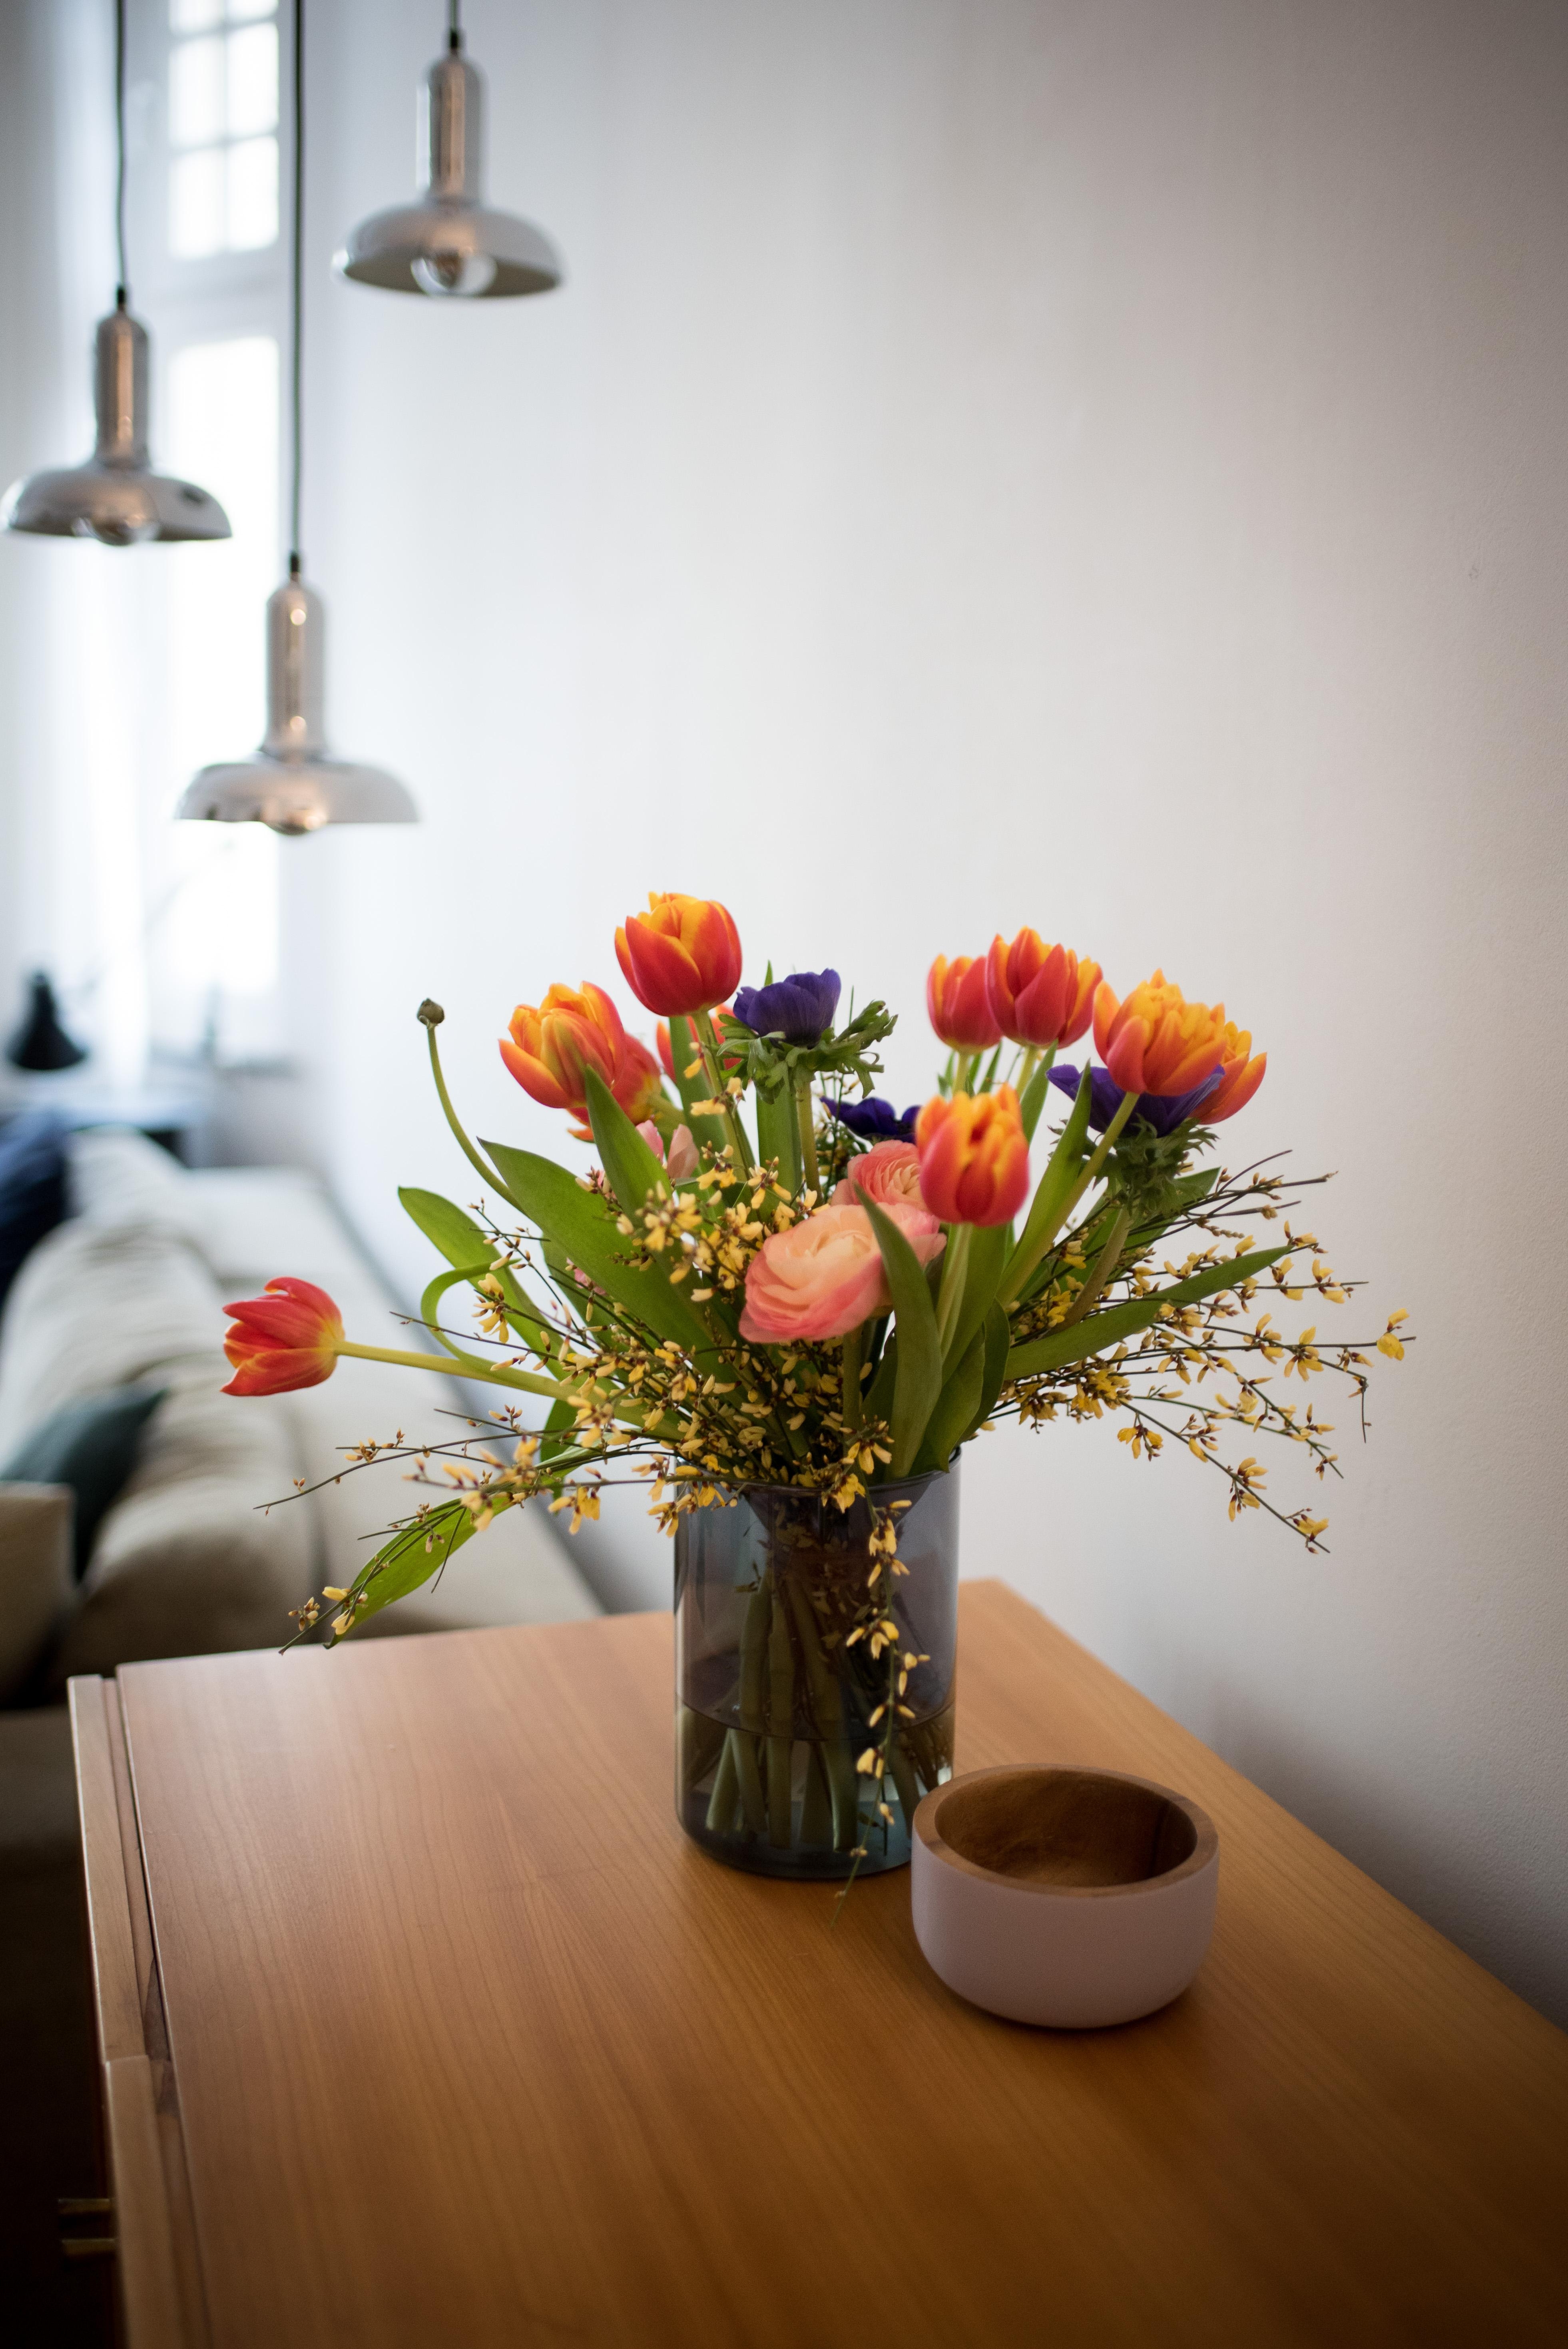 Freitagsblumen! #interiorinspo #wohnzimmer #freshflowers #vintage #interiorstyle